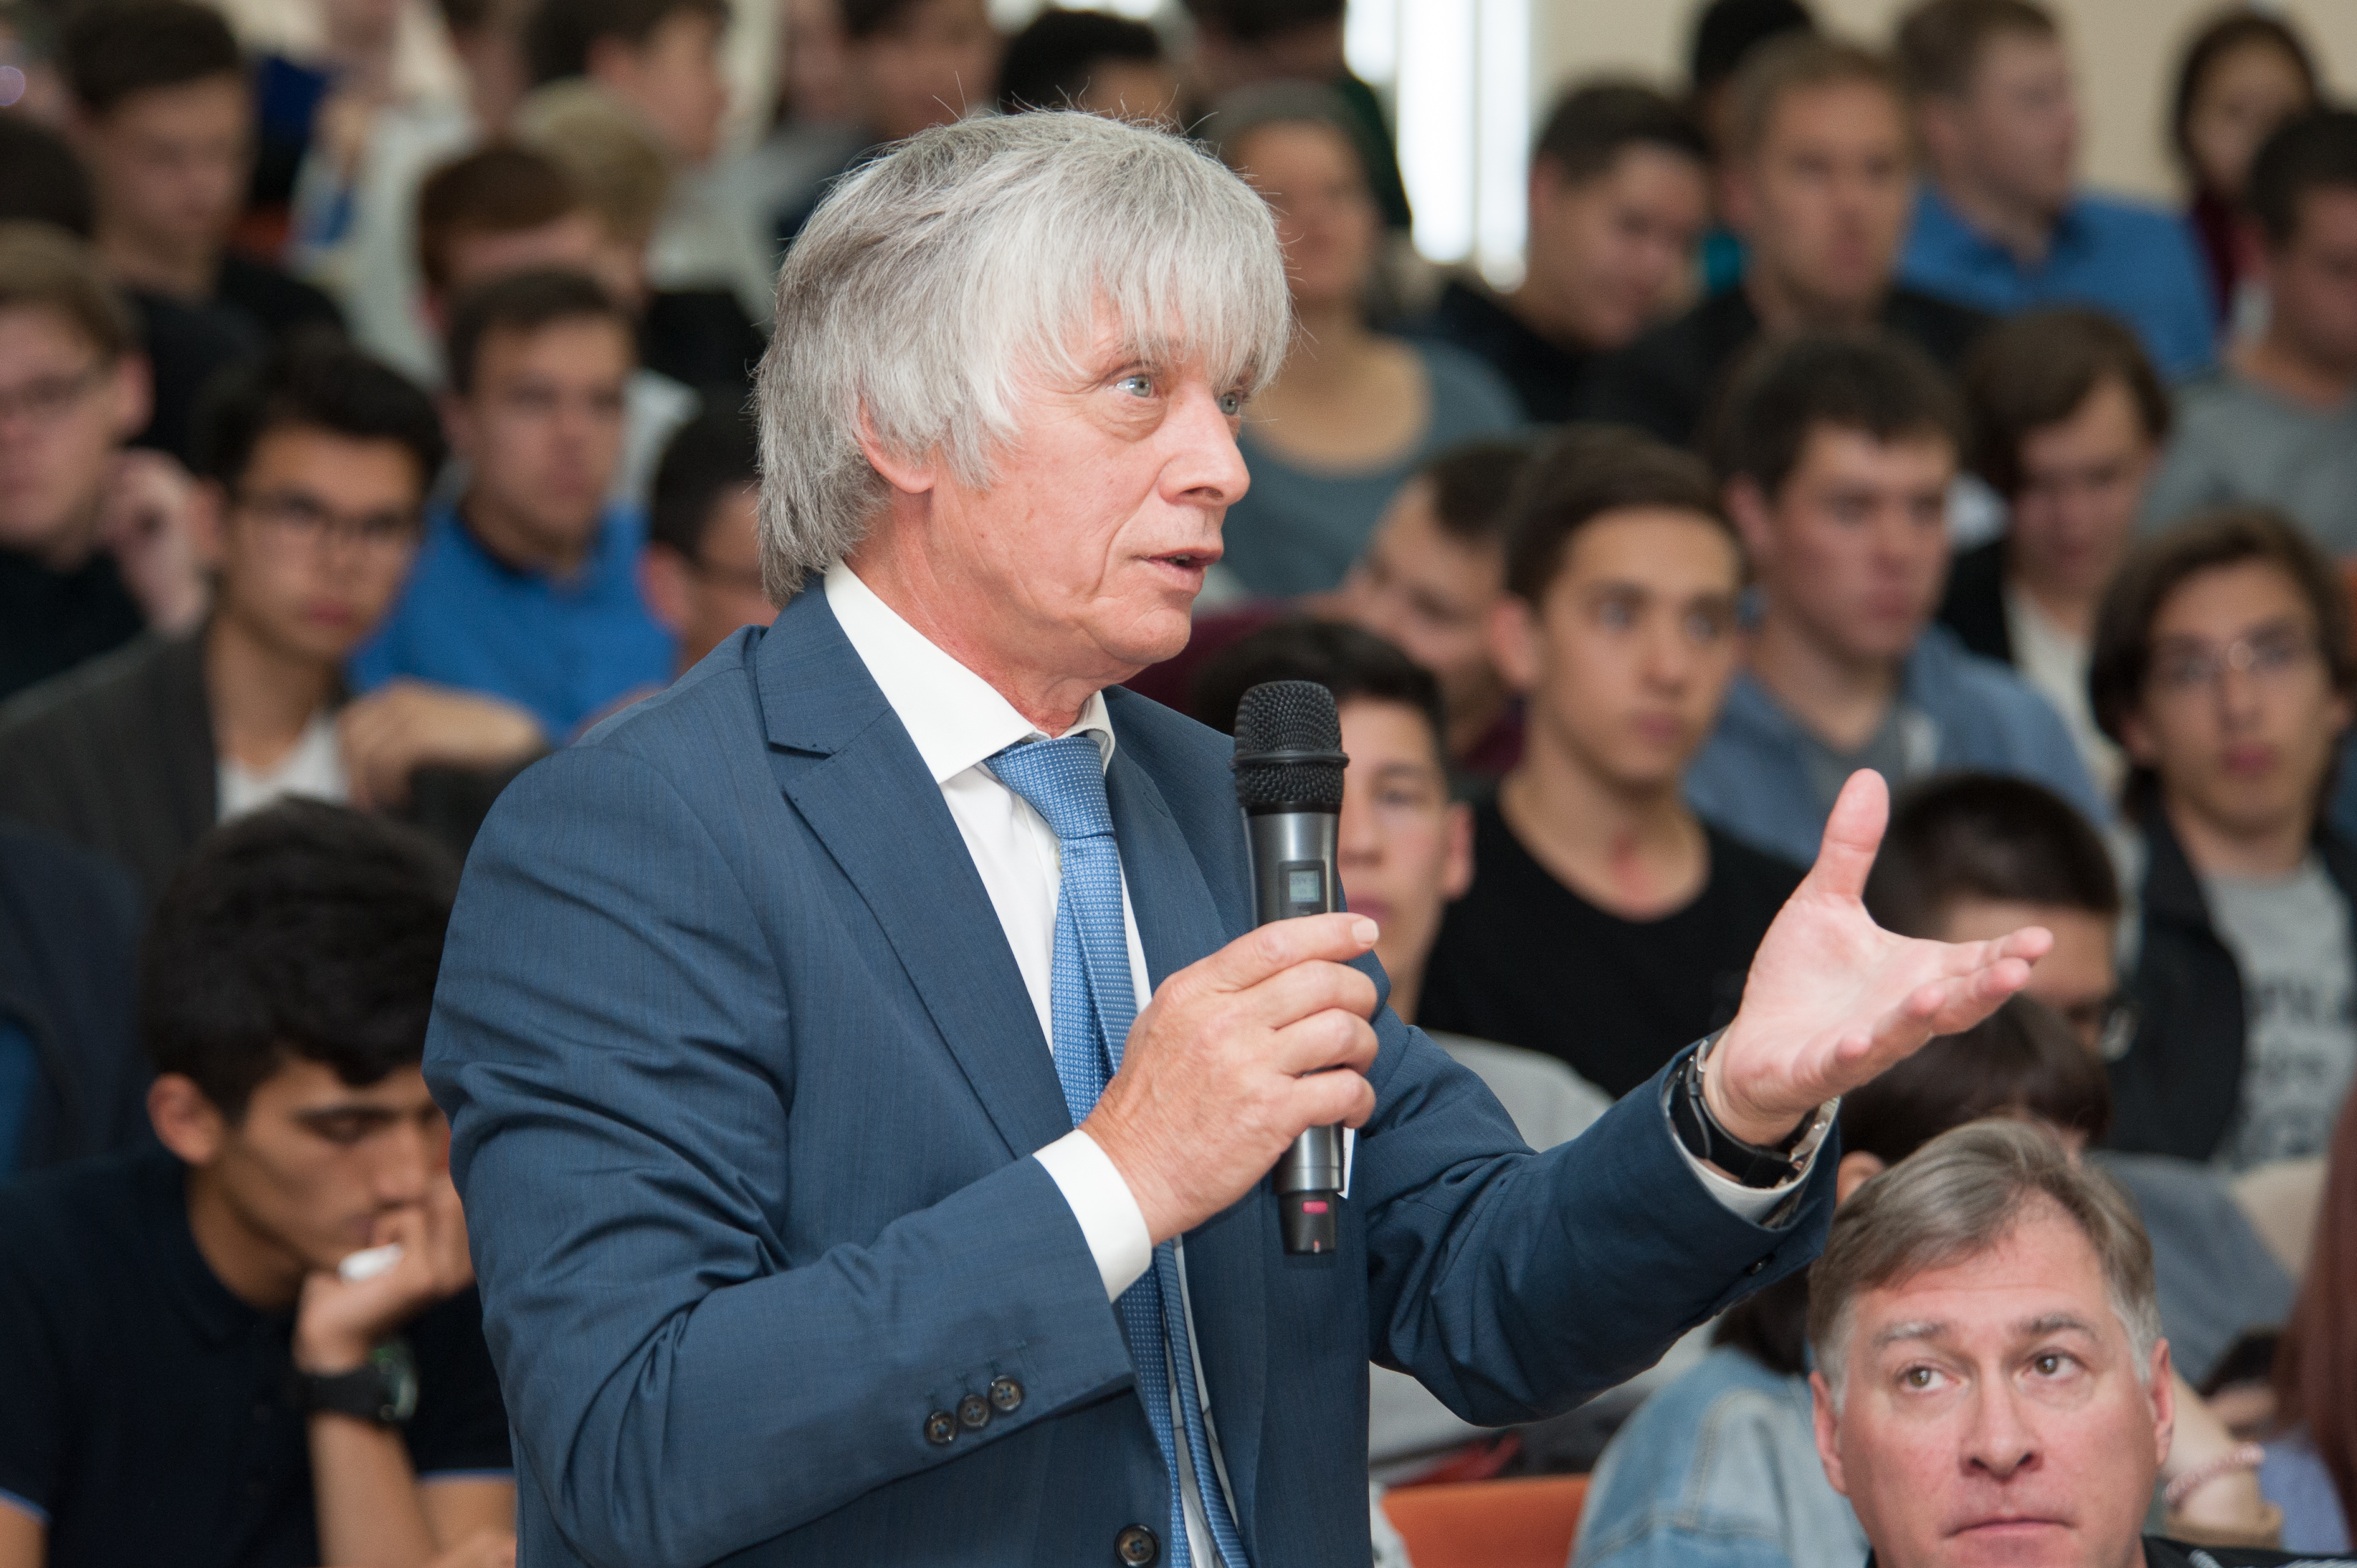 Plenary discussion, Prof. Evgeny Antipov (Lomonosov Moscow State University)